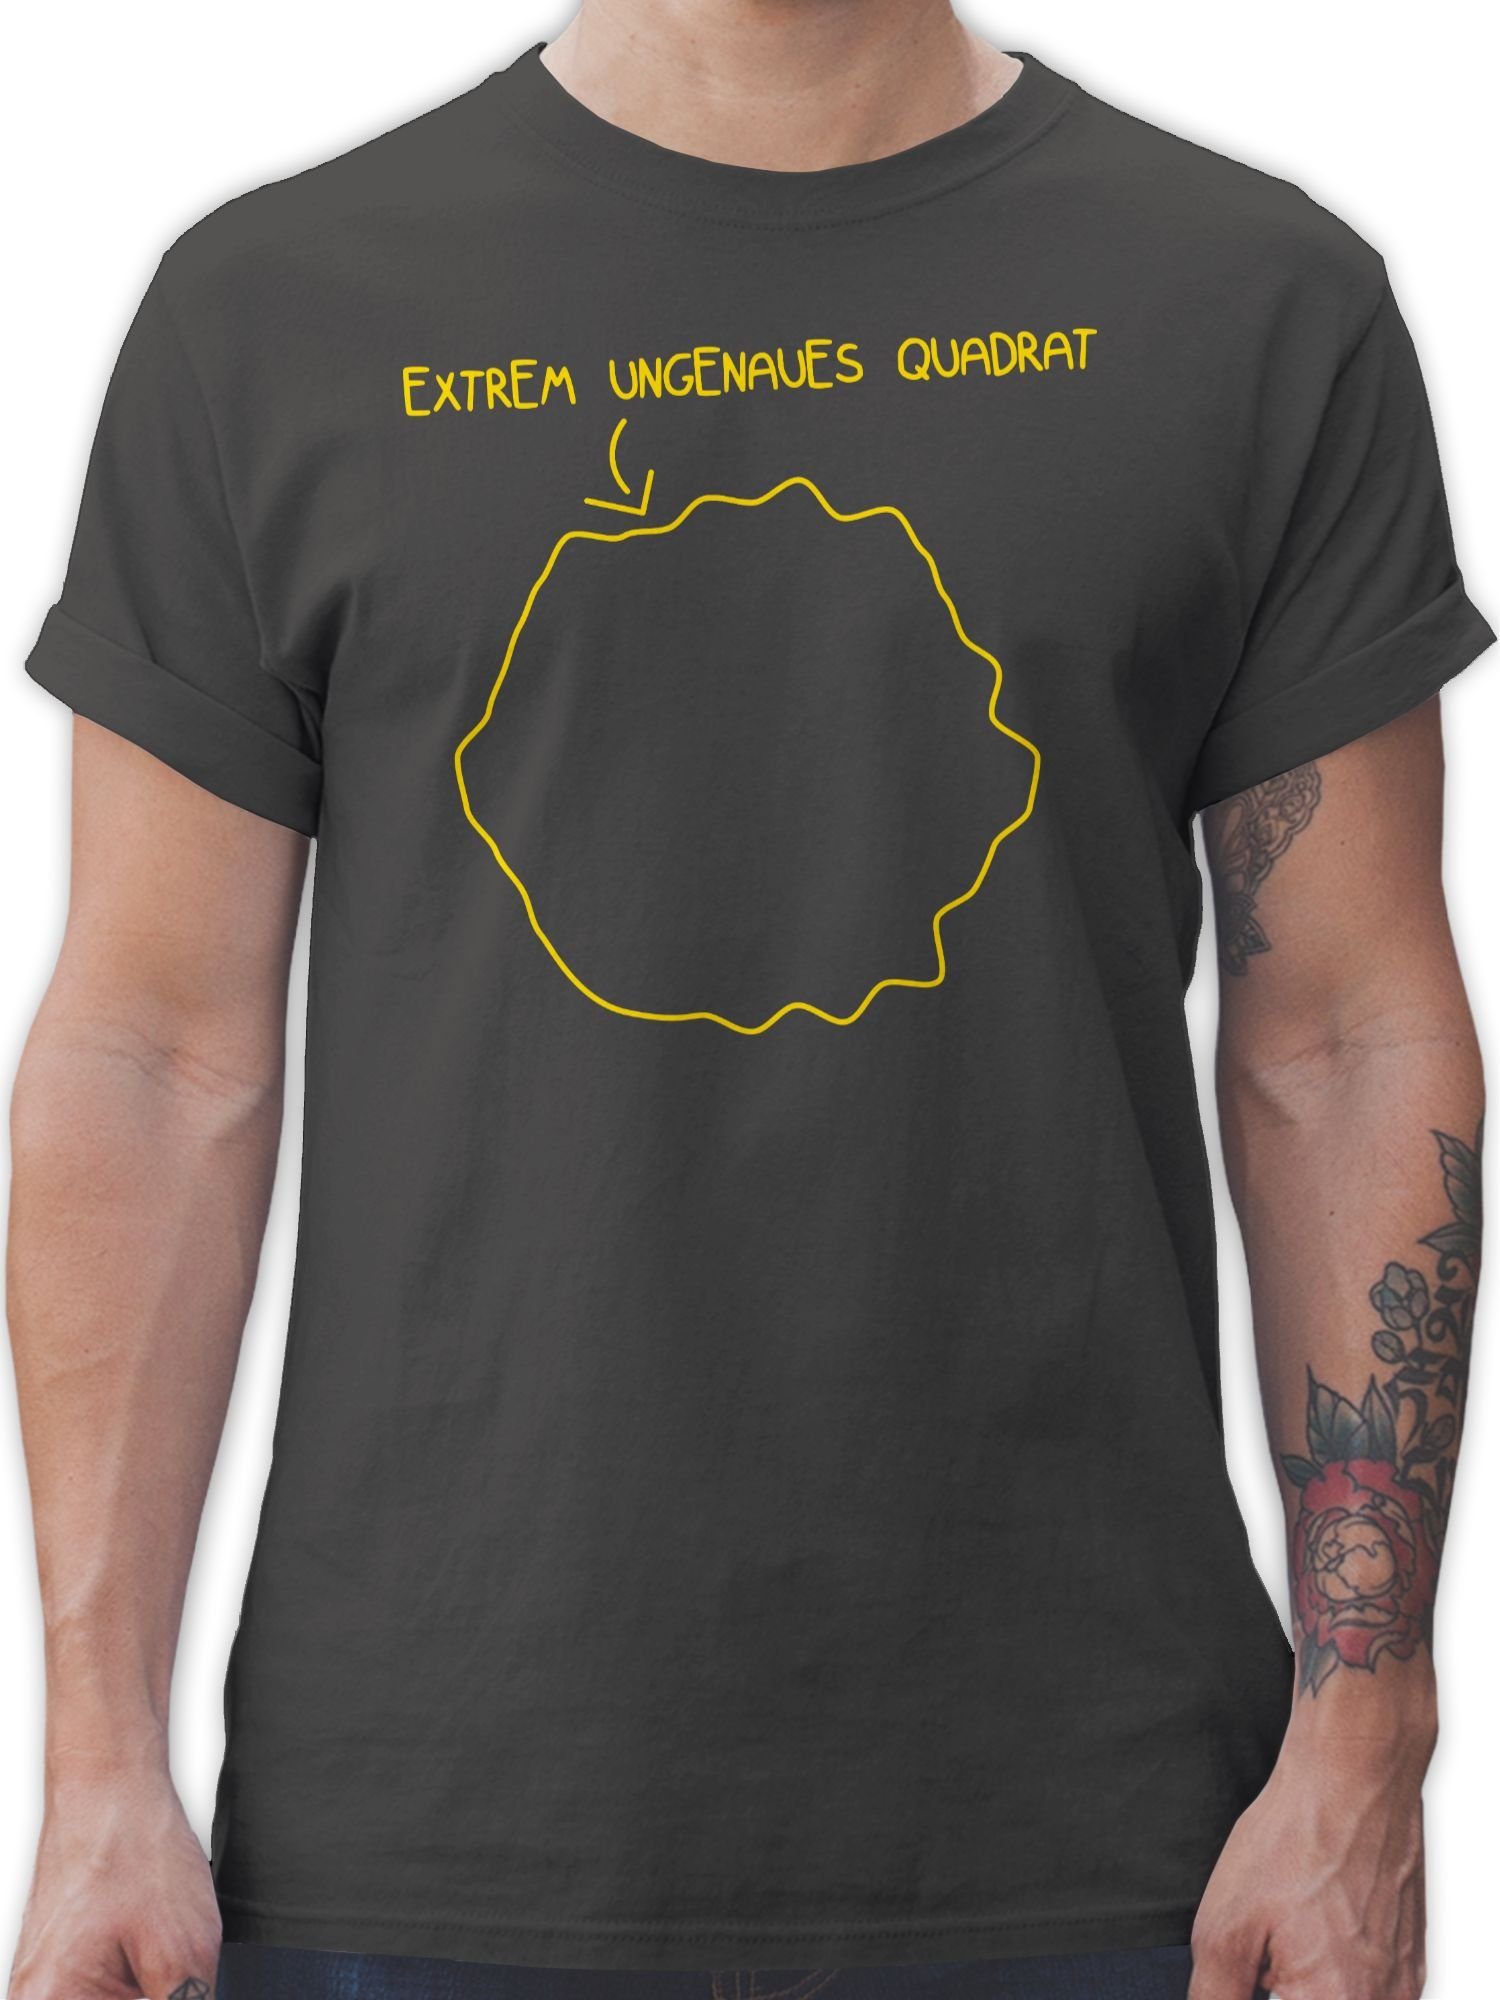 Statement Sprüche 02 Quadrat Spruch Shirtracer T-Shirt mit Dunkelgrau ungenaues Extrem